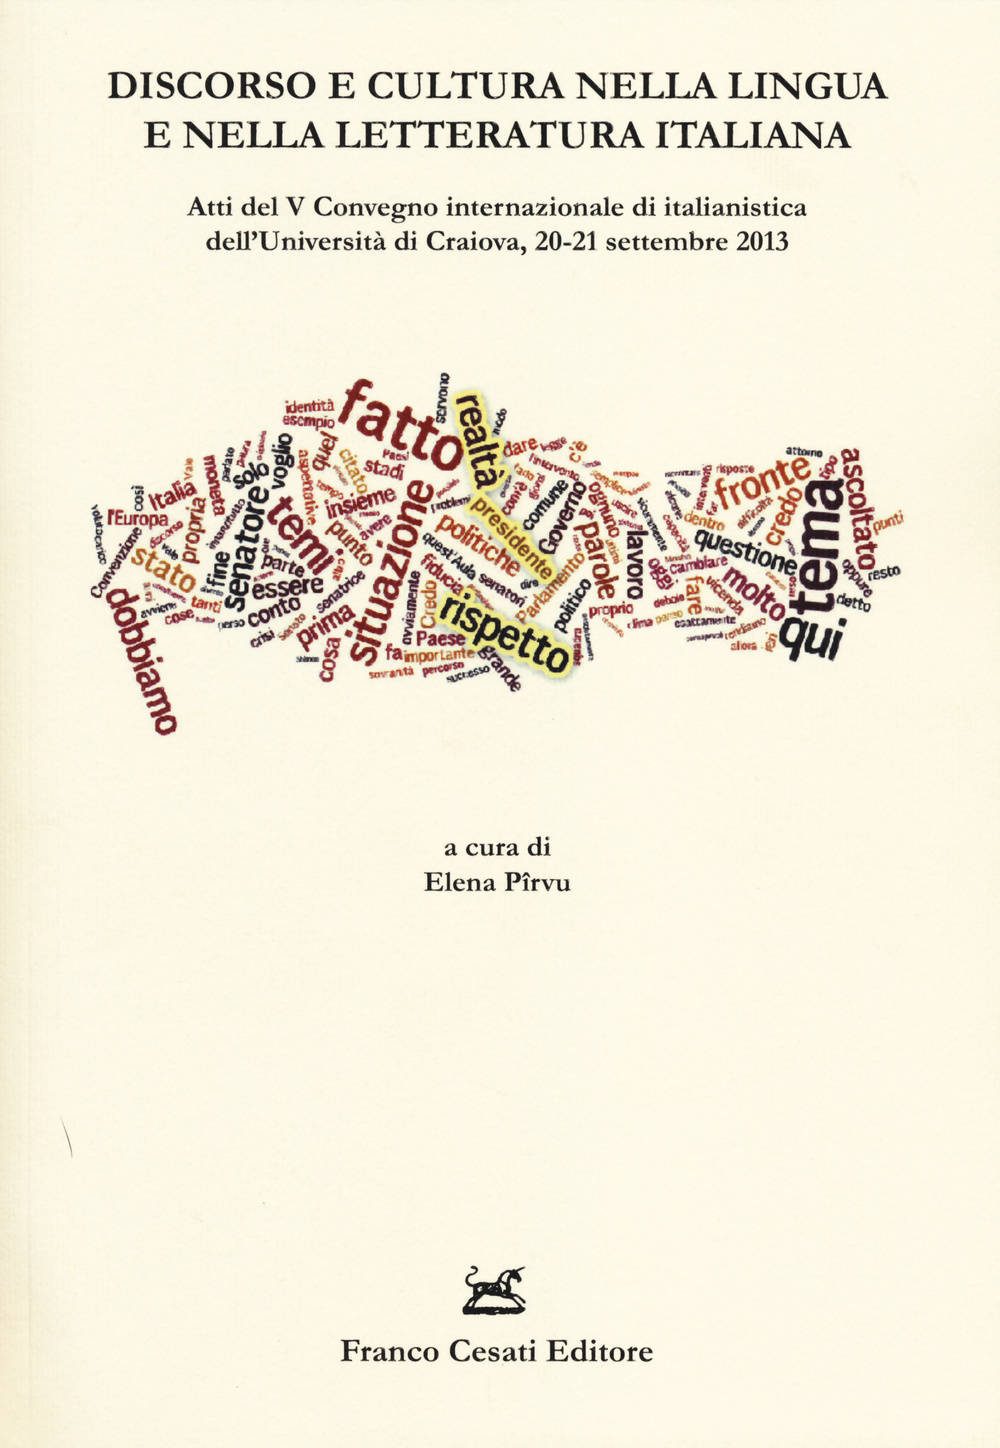 Discorso e cultura nella lingua e nella letteratura italiana. Atti del V Convegno internazionale di italianistica (Craiova, 20-21 settembre 2013) 1 settembre 2013